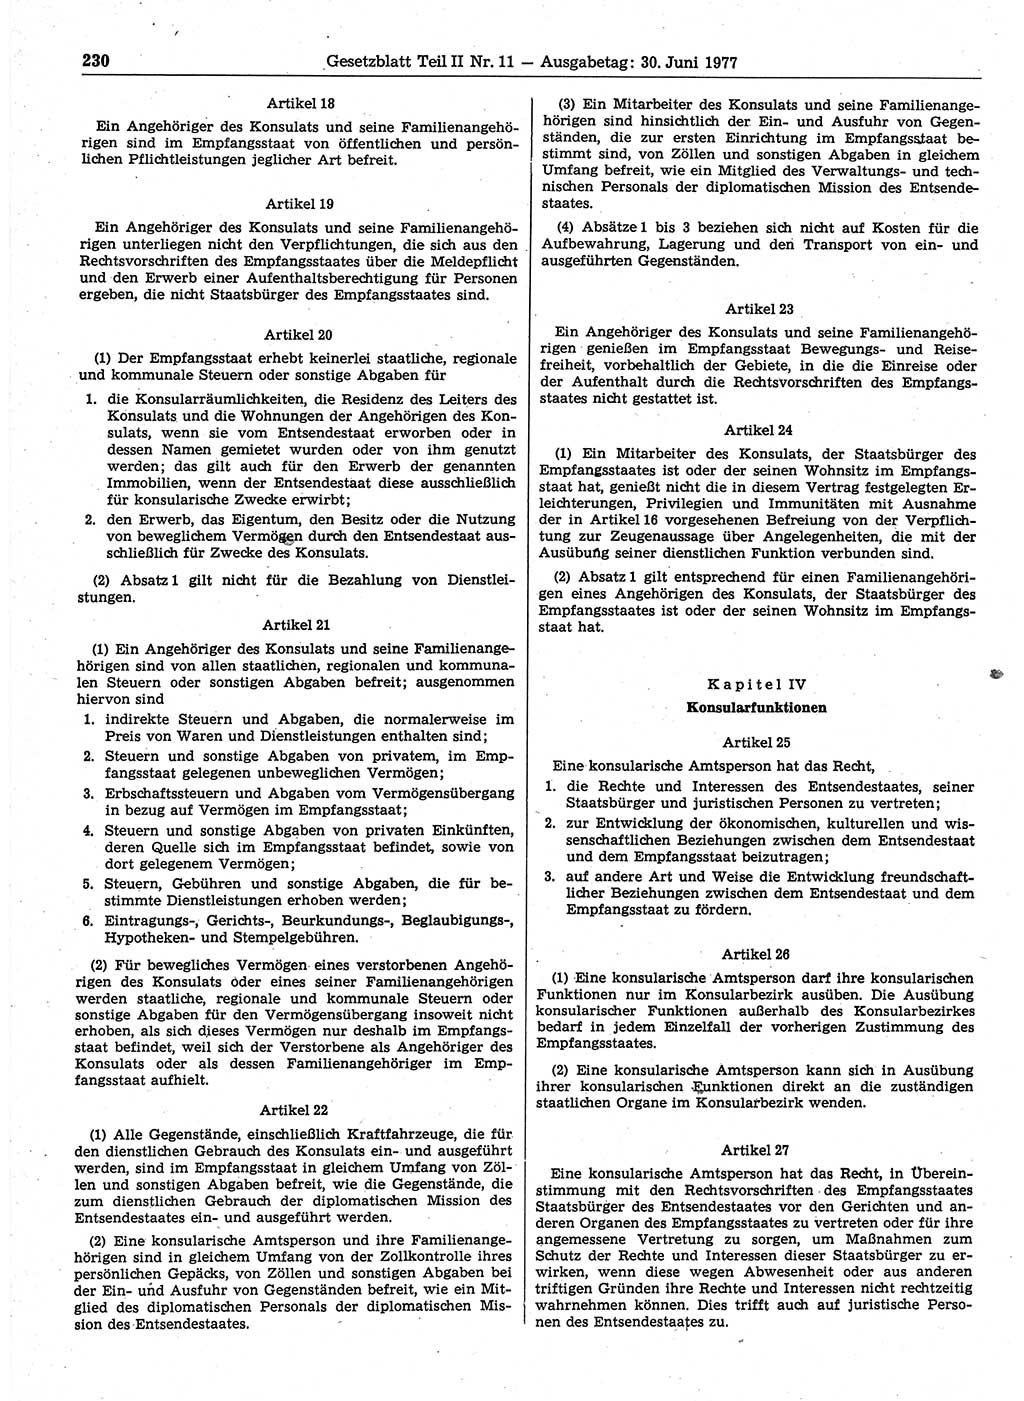 Gesetzblatt (GBl.) der Deutschen Demokratischen Republik (DDR) Teil ⅠⅠ 1977, Seite 230 (GBl. DDR ⅠⅠ 1977, S. 230)